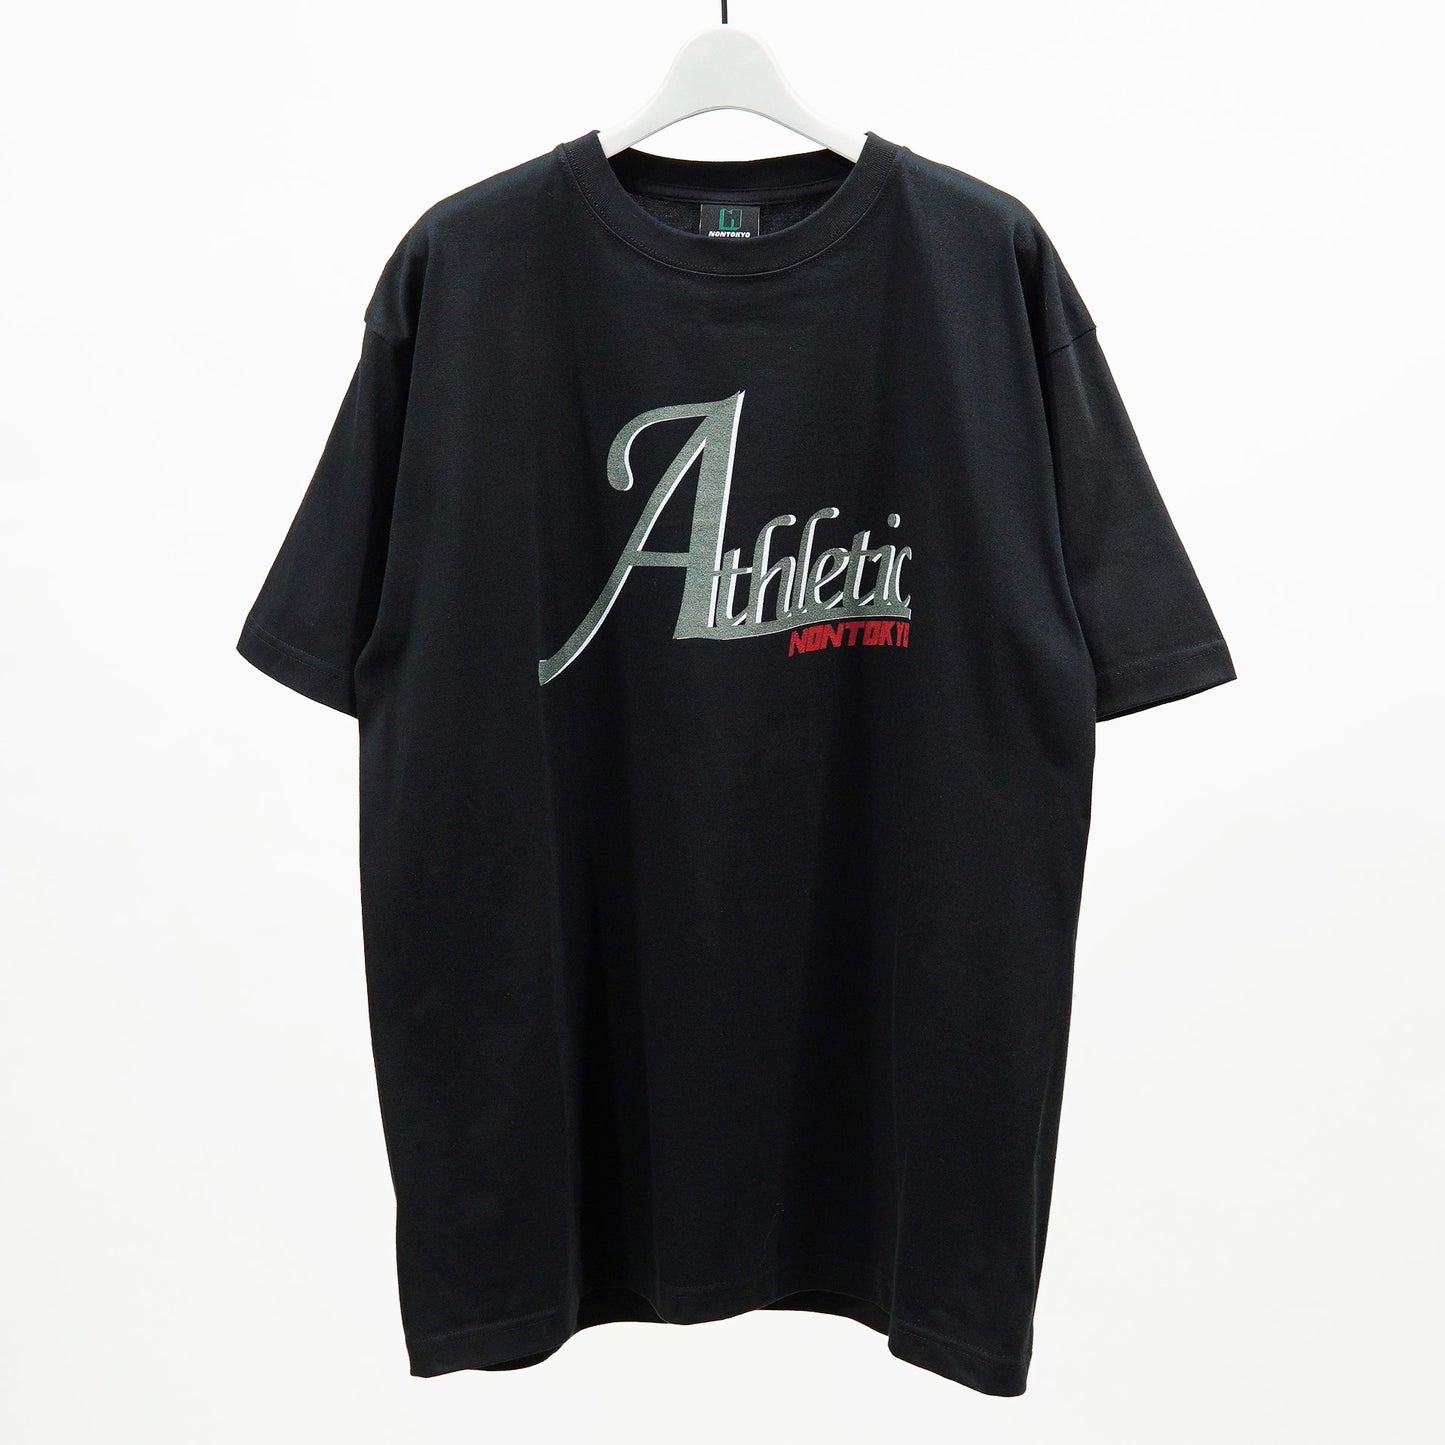 NON TOKYO / PRINT T-SHIRT(Athletic /BLACK/SIZE 1) / 〈ノントーキョー〉プリントTシャツ (アスレチック / ブラック)